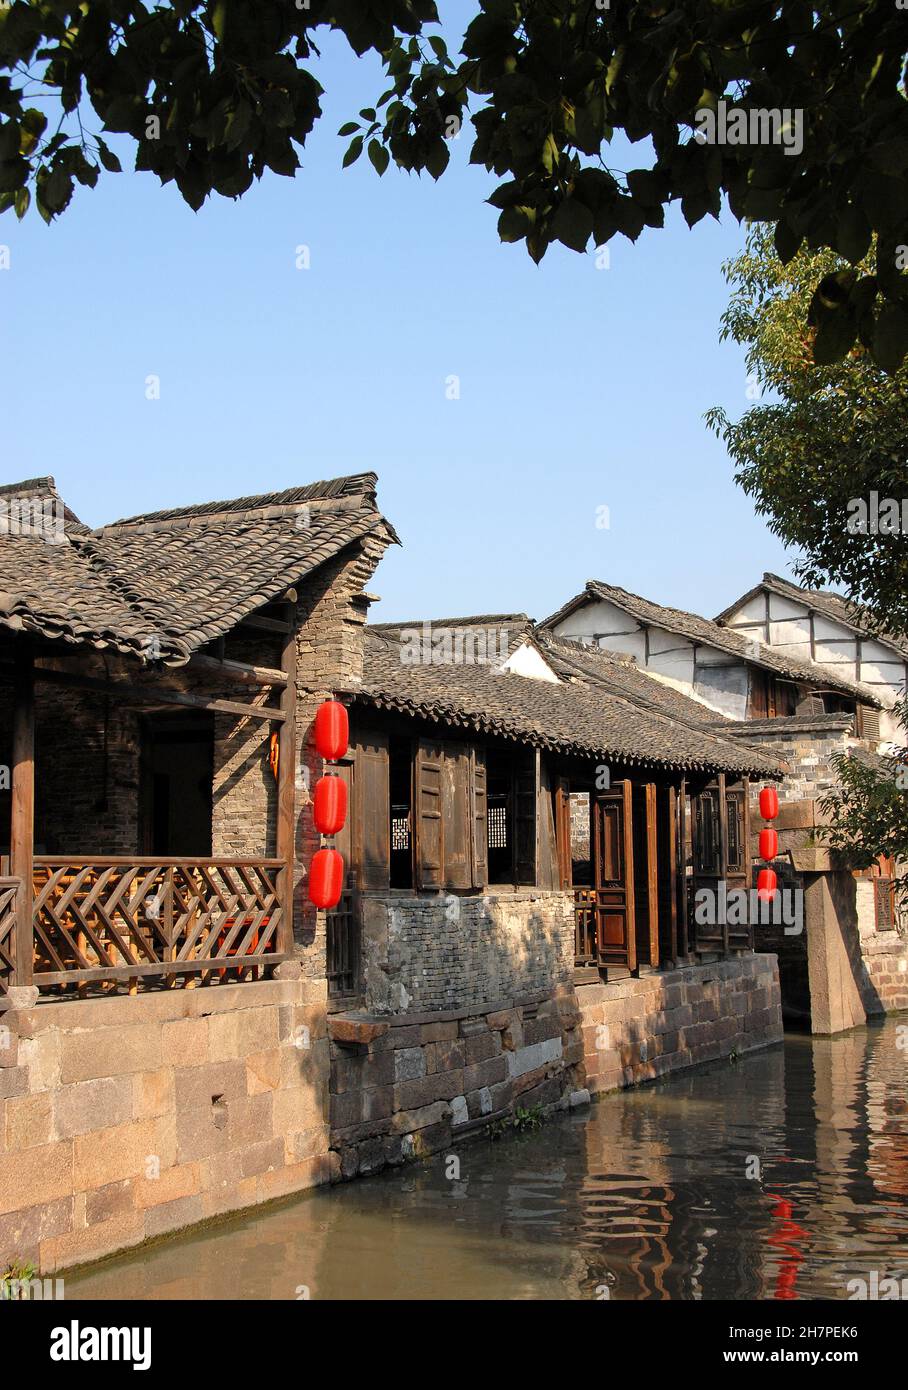 Wuzhen Water Town, Provincia di Zhejiang, Cina. Un tradizionale edificio in legno con lanterne rosse accanto ad un canale nella vecchia città cinese di Wuzhen. Foto Stock